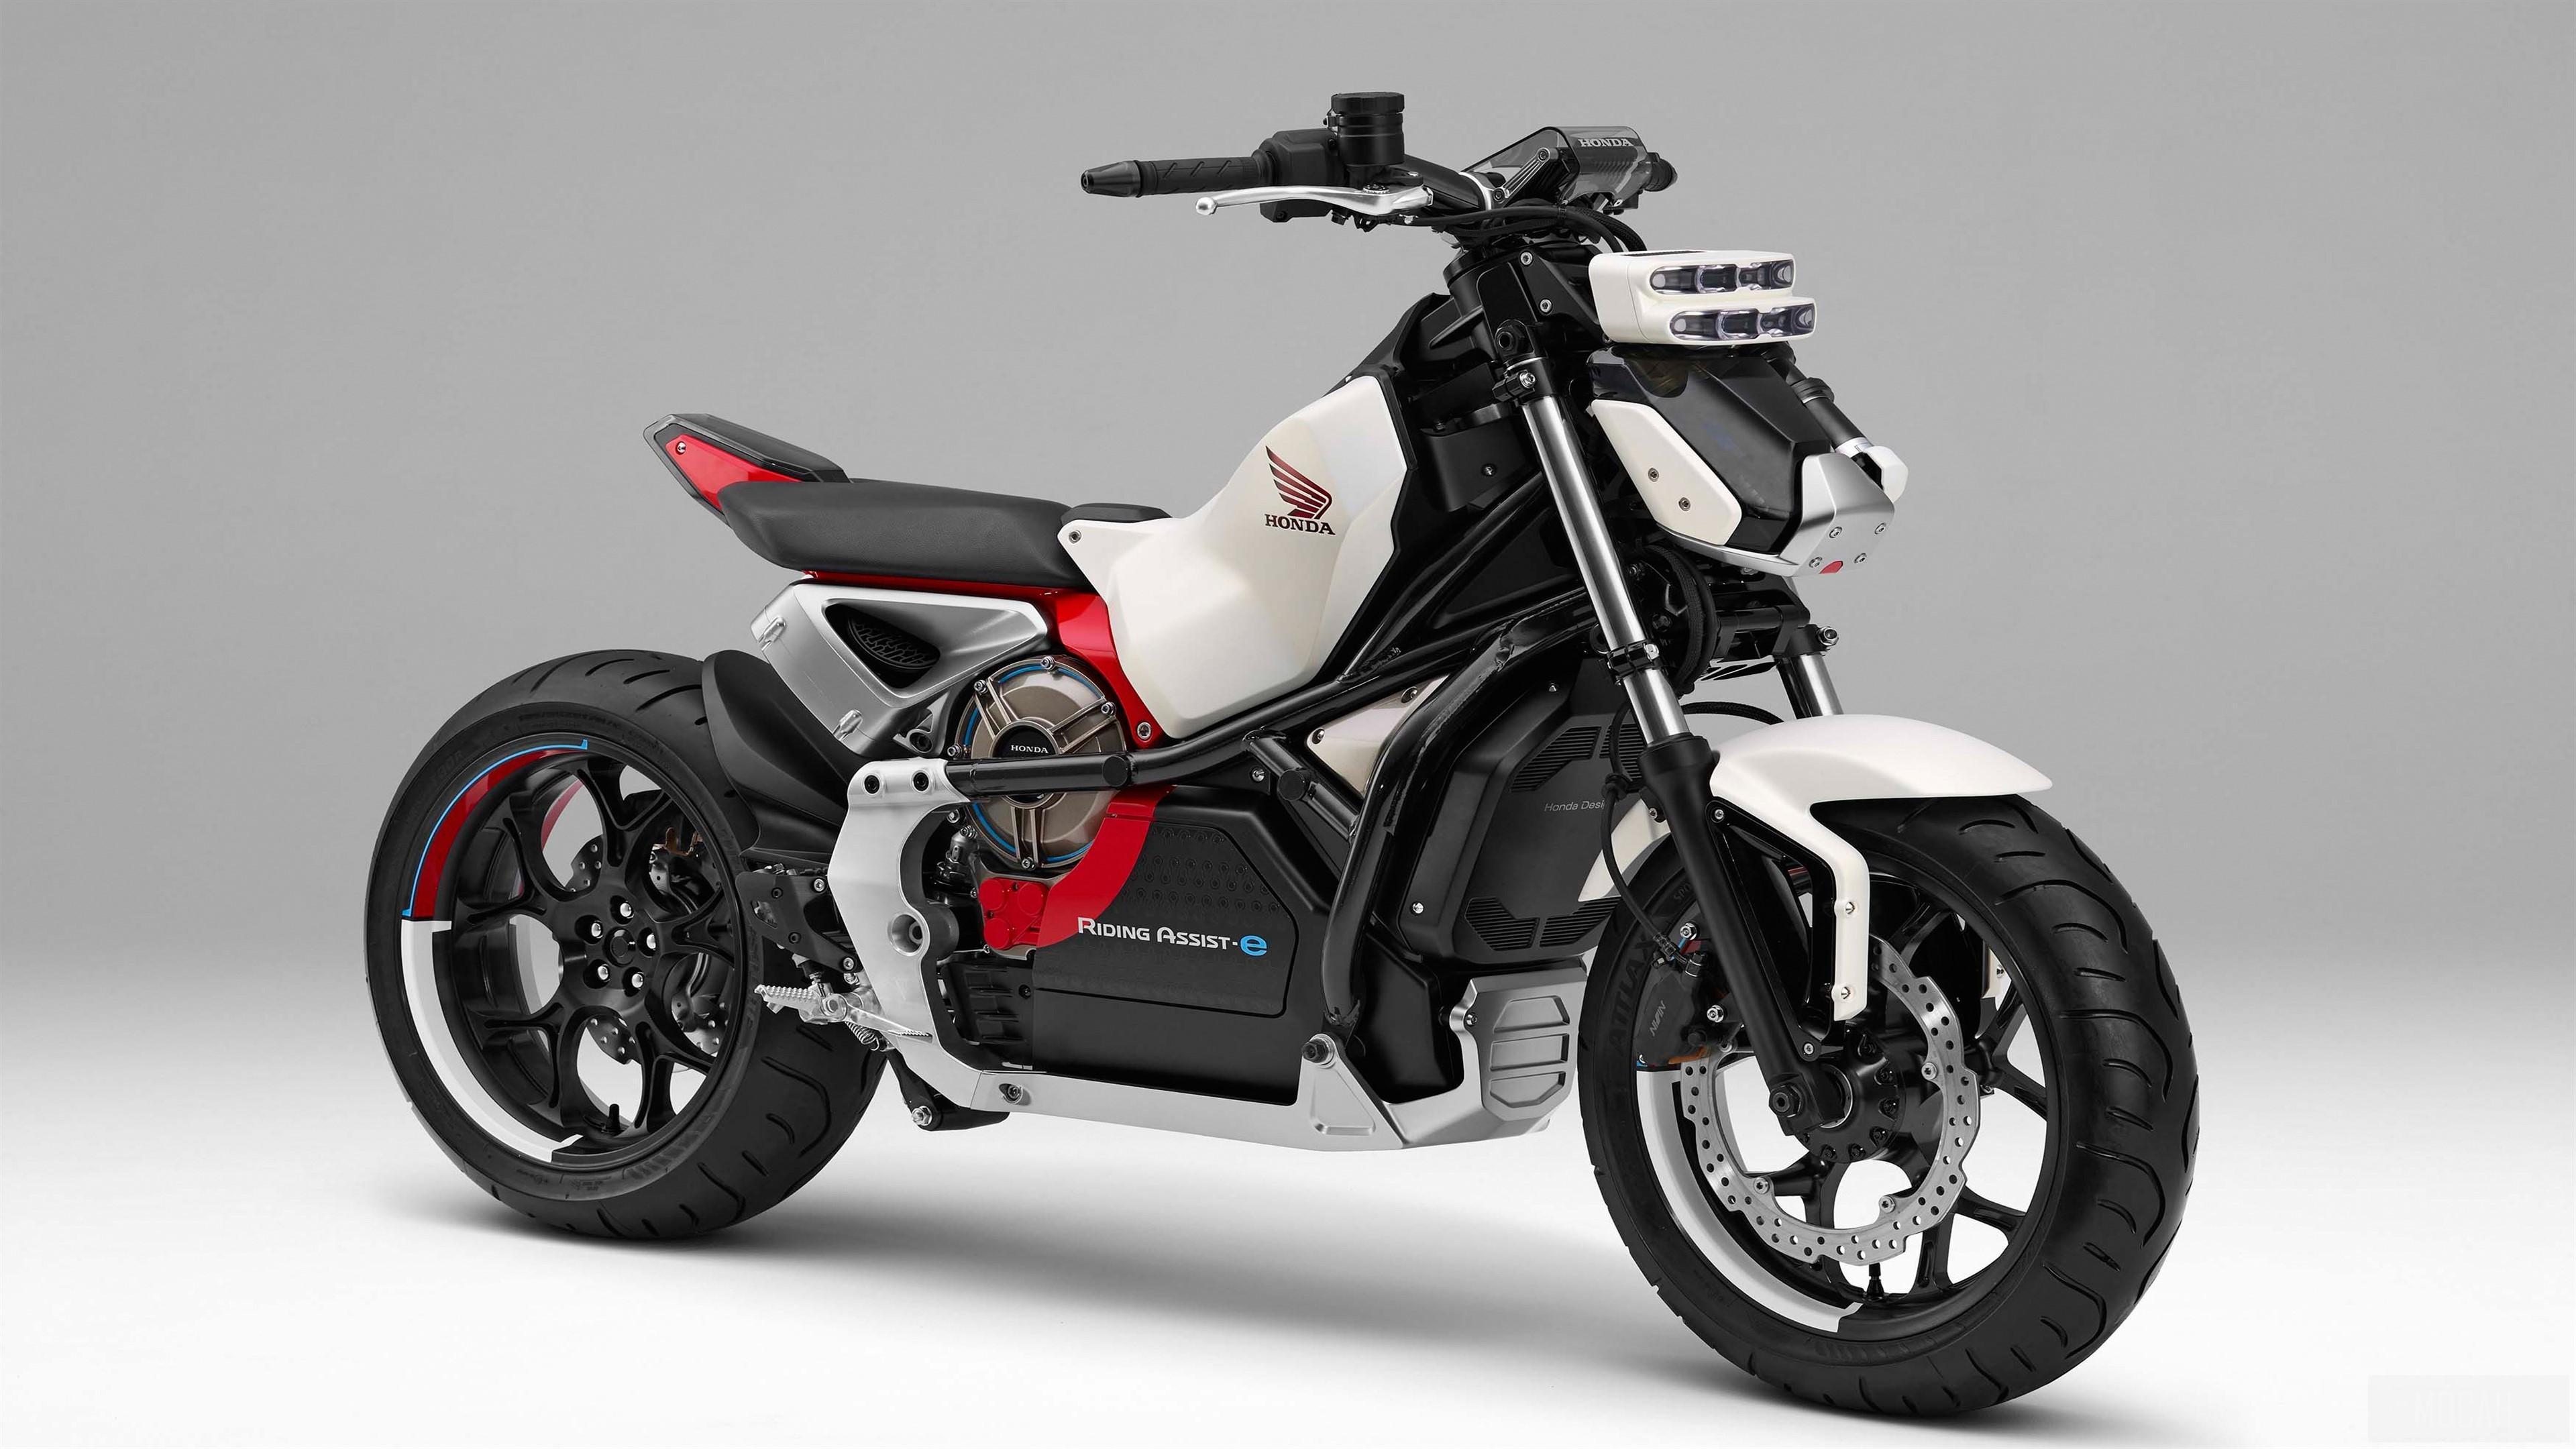 HD wallpaper, 2018 New Honda Riding Assist E Concept 4K